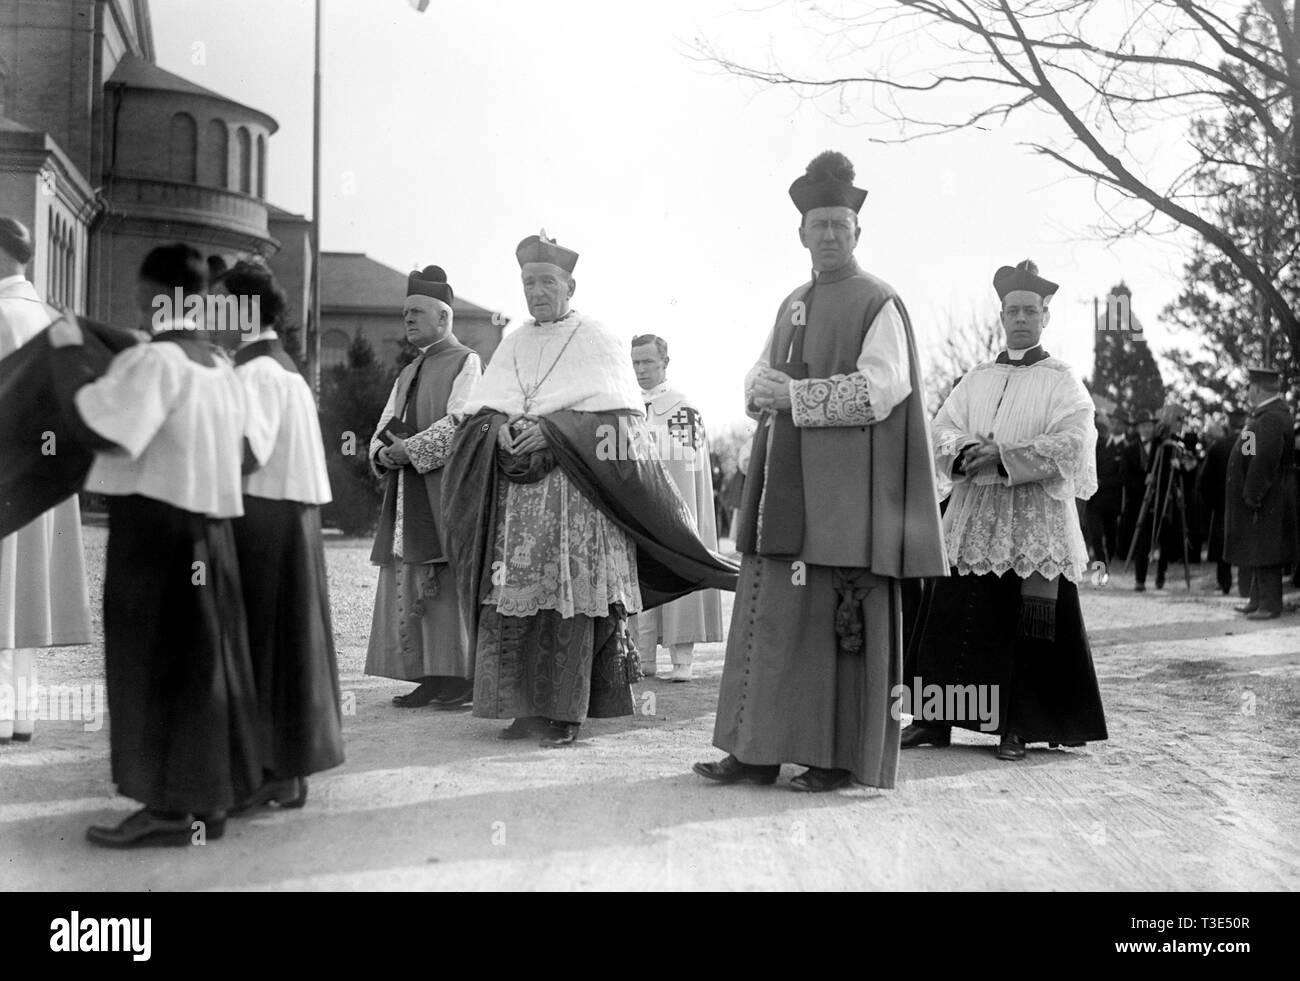 Los líderes religiosos procesión religiosa al aire libre en caso de ca. 1919 Foto de stock